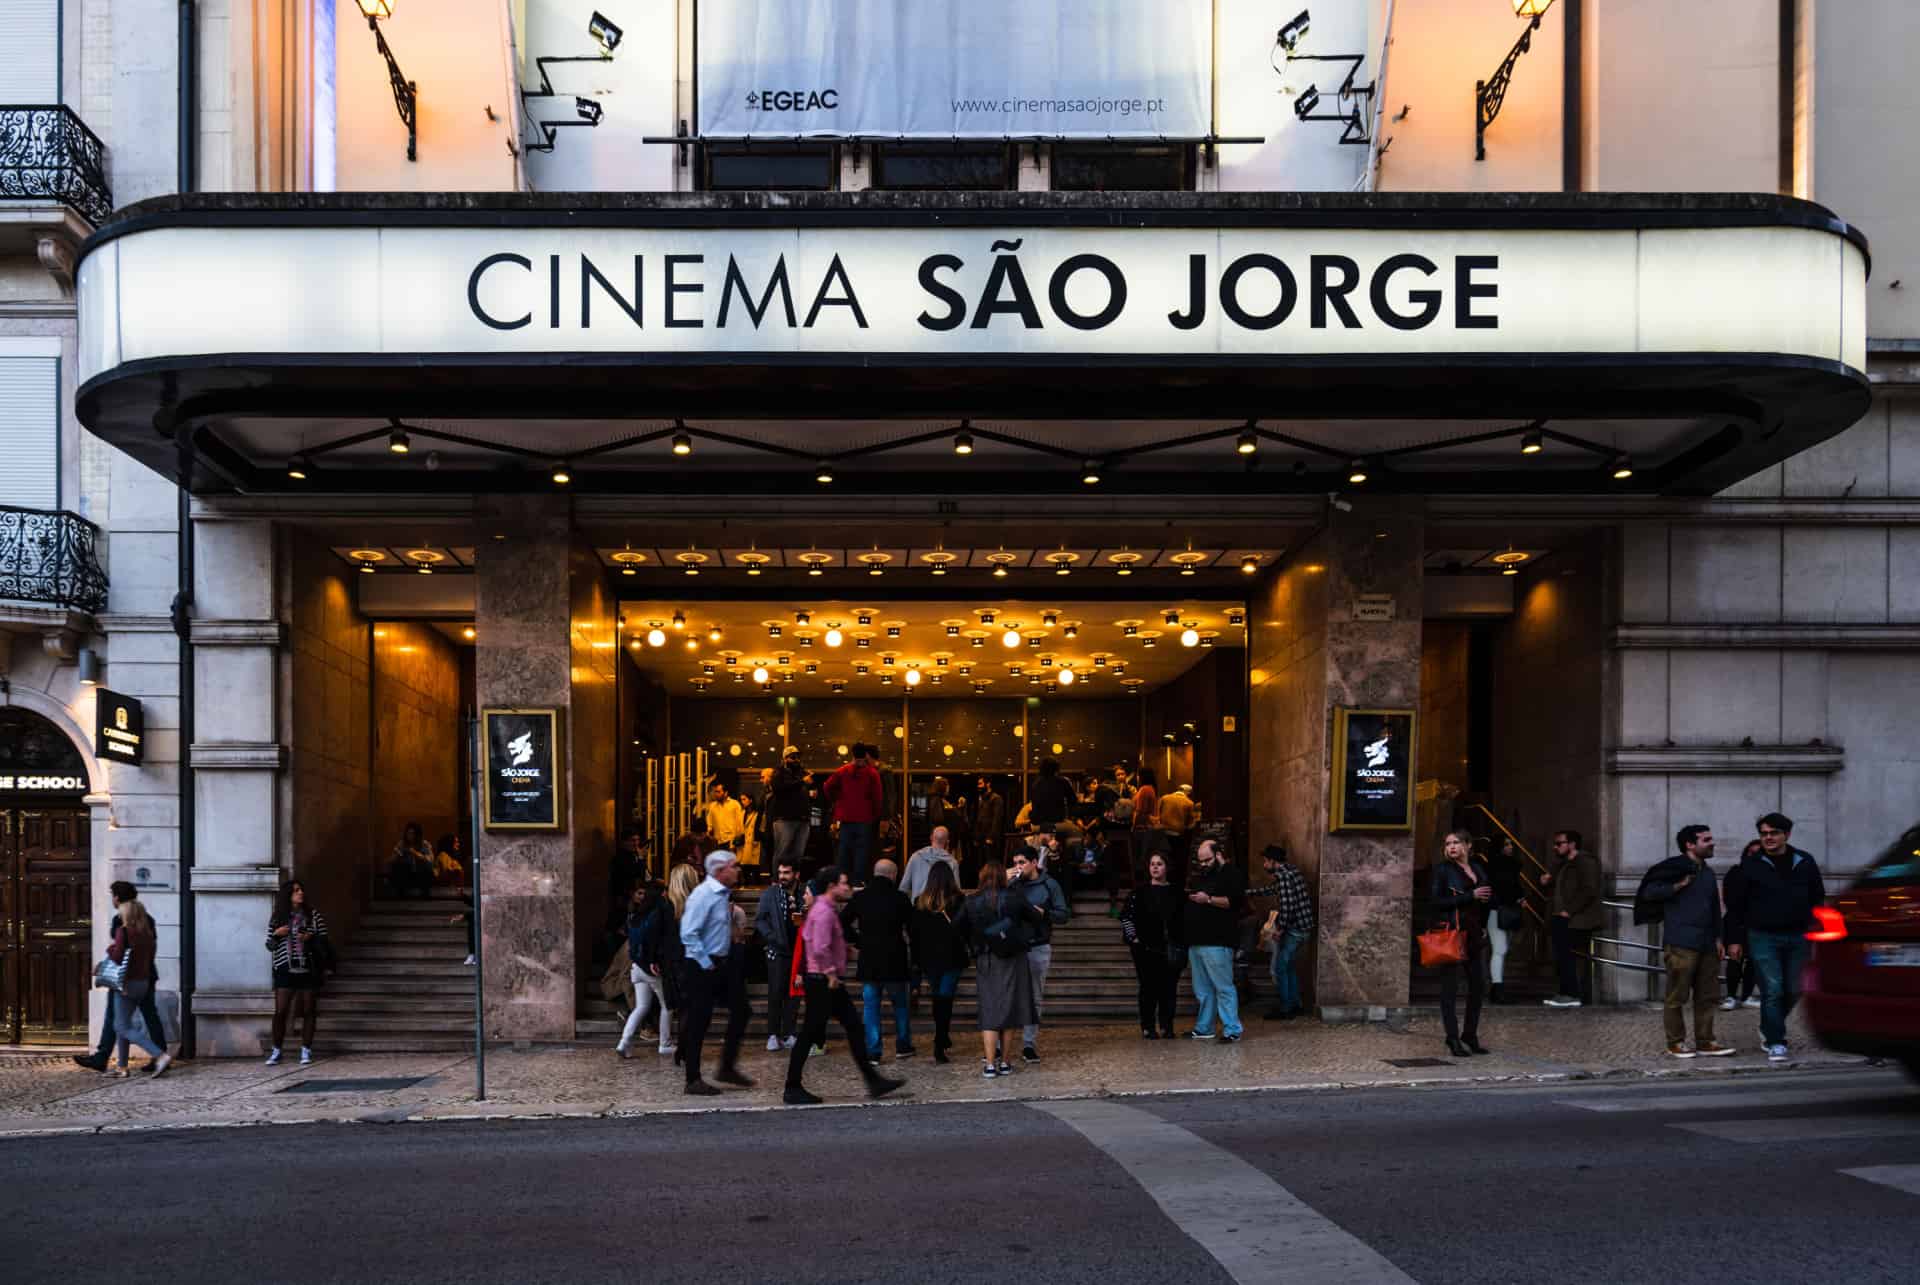 Cinema Sao Jorge